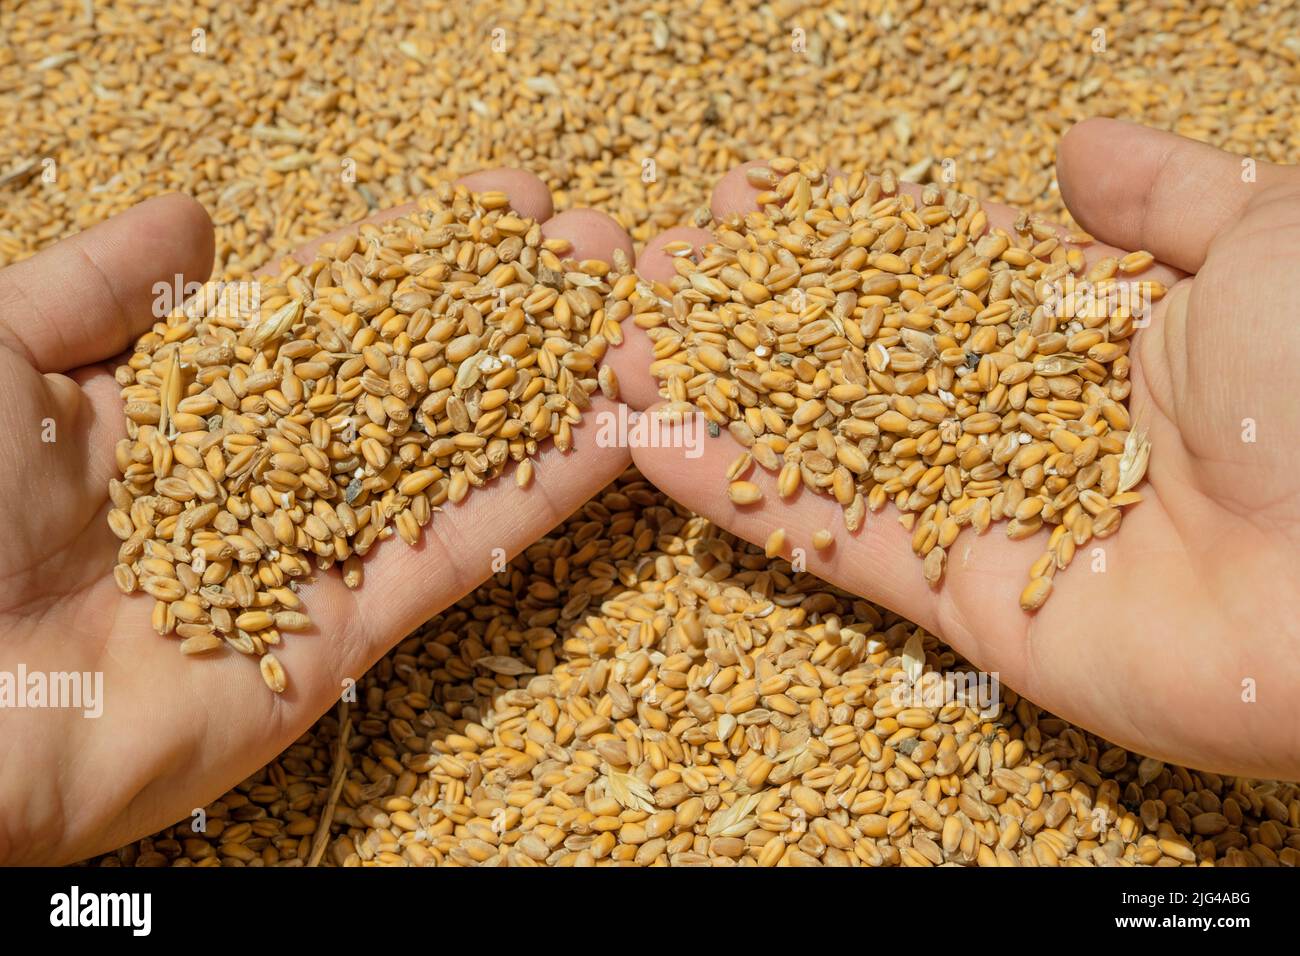 La mano del granjero mientras que toca granos cosechados de las semillas del trigo, ingredientes crudos del alimento, crisis del precio del producto agrícola Foto de stock